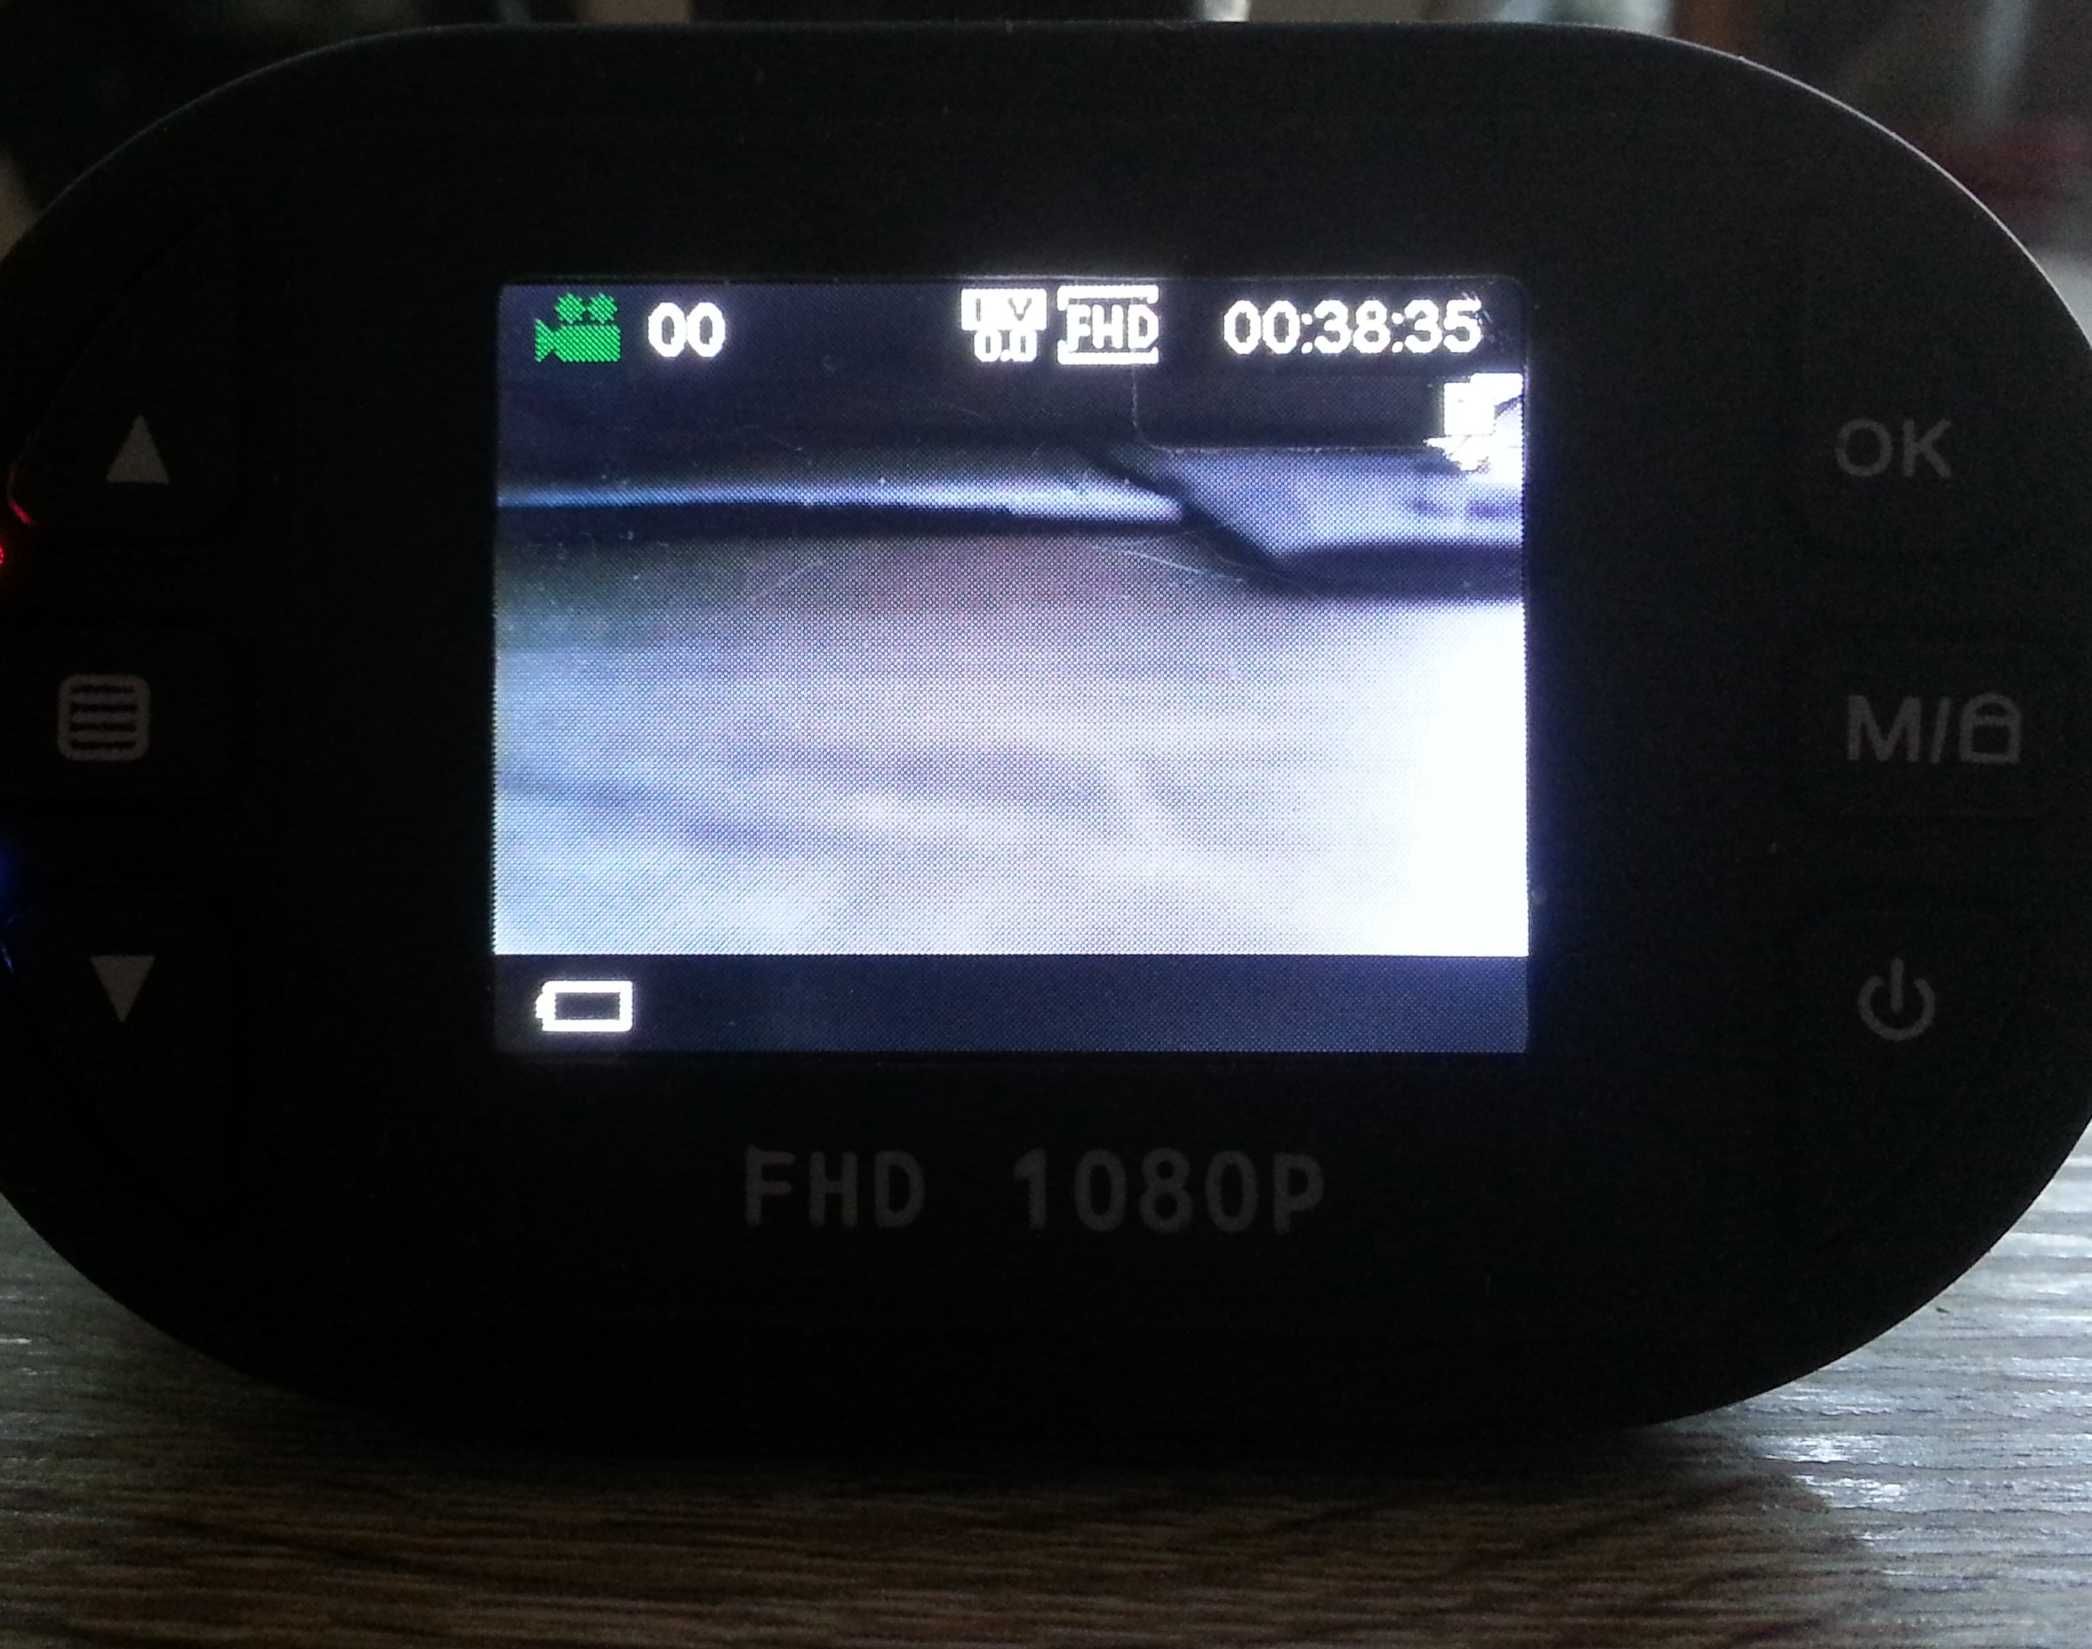 Відеореєстратор ATRiX JS-X120 відео HD у гарному стані + карта пам!яті